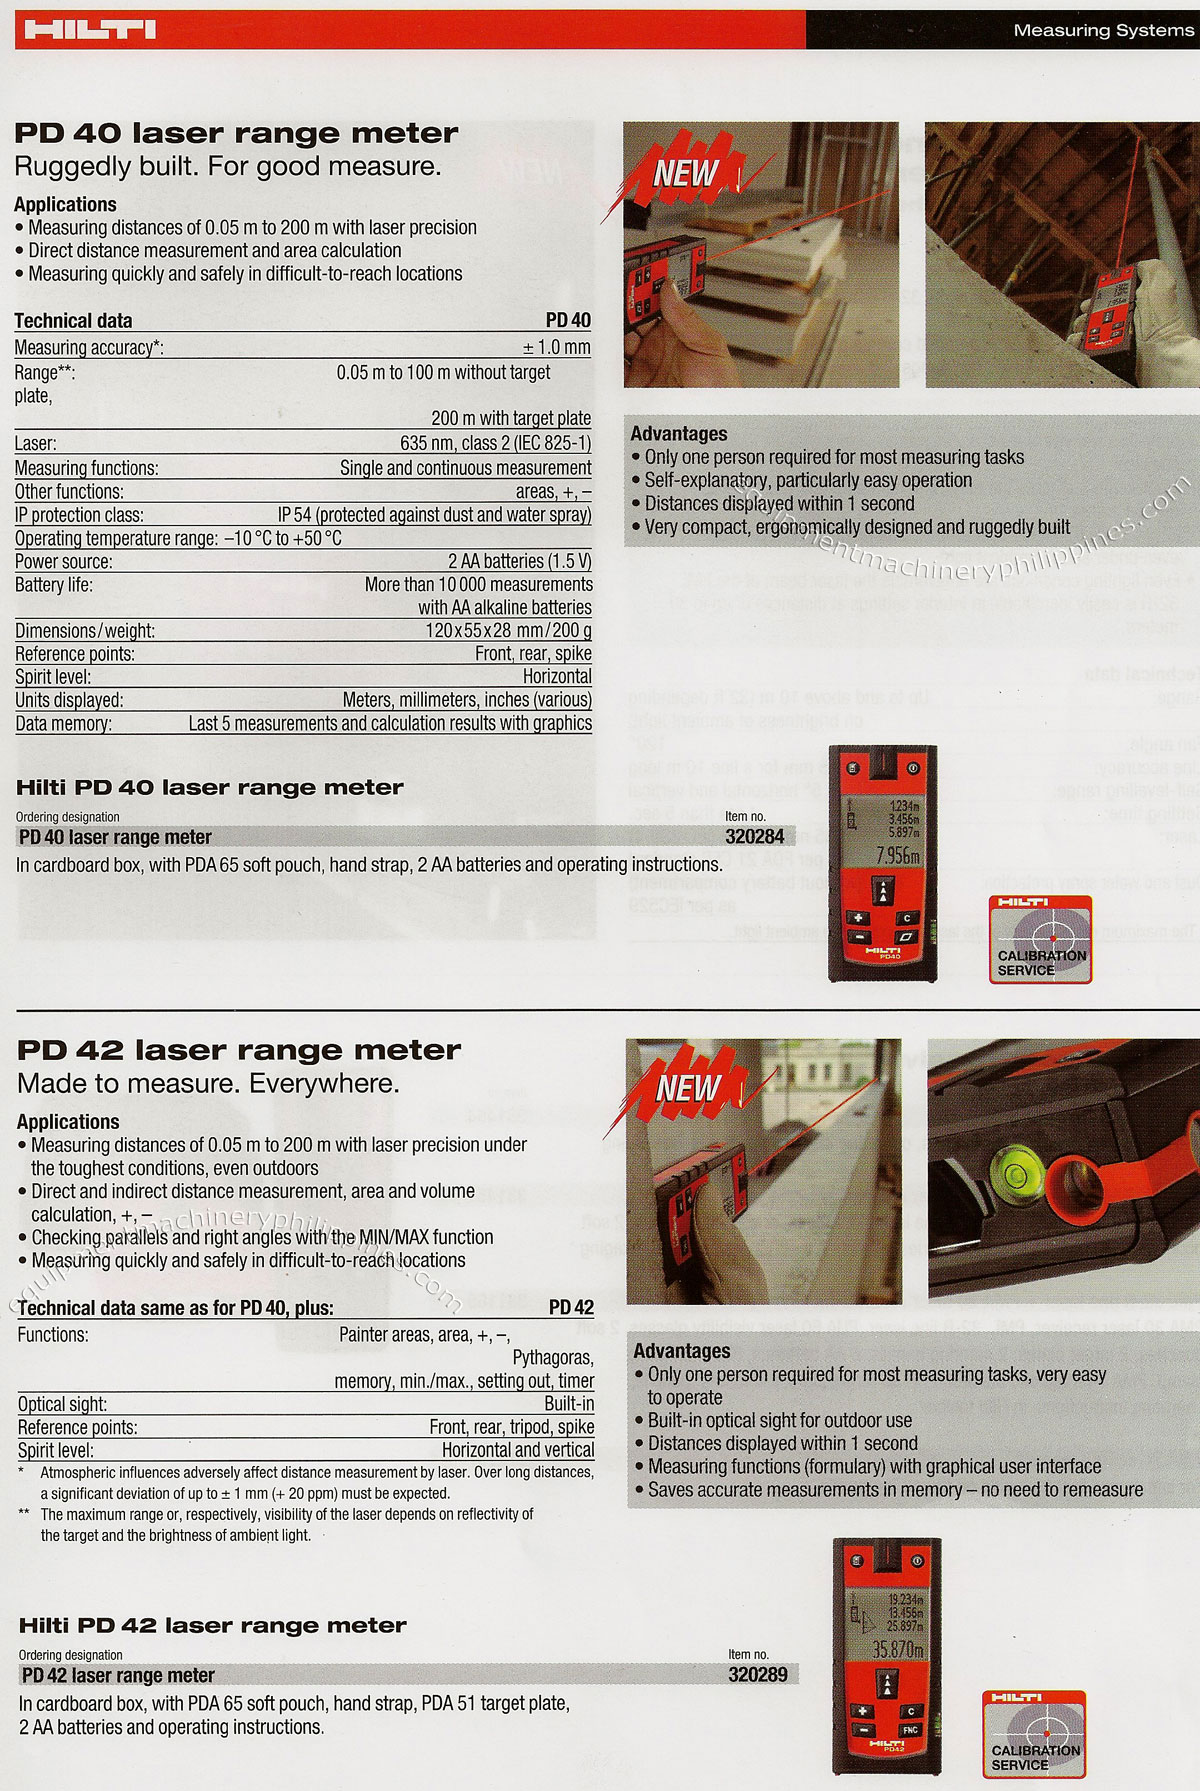 PD 40 Laser Range Meter; PD 42 Laser Range Meter